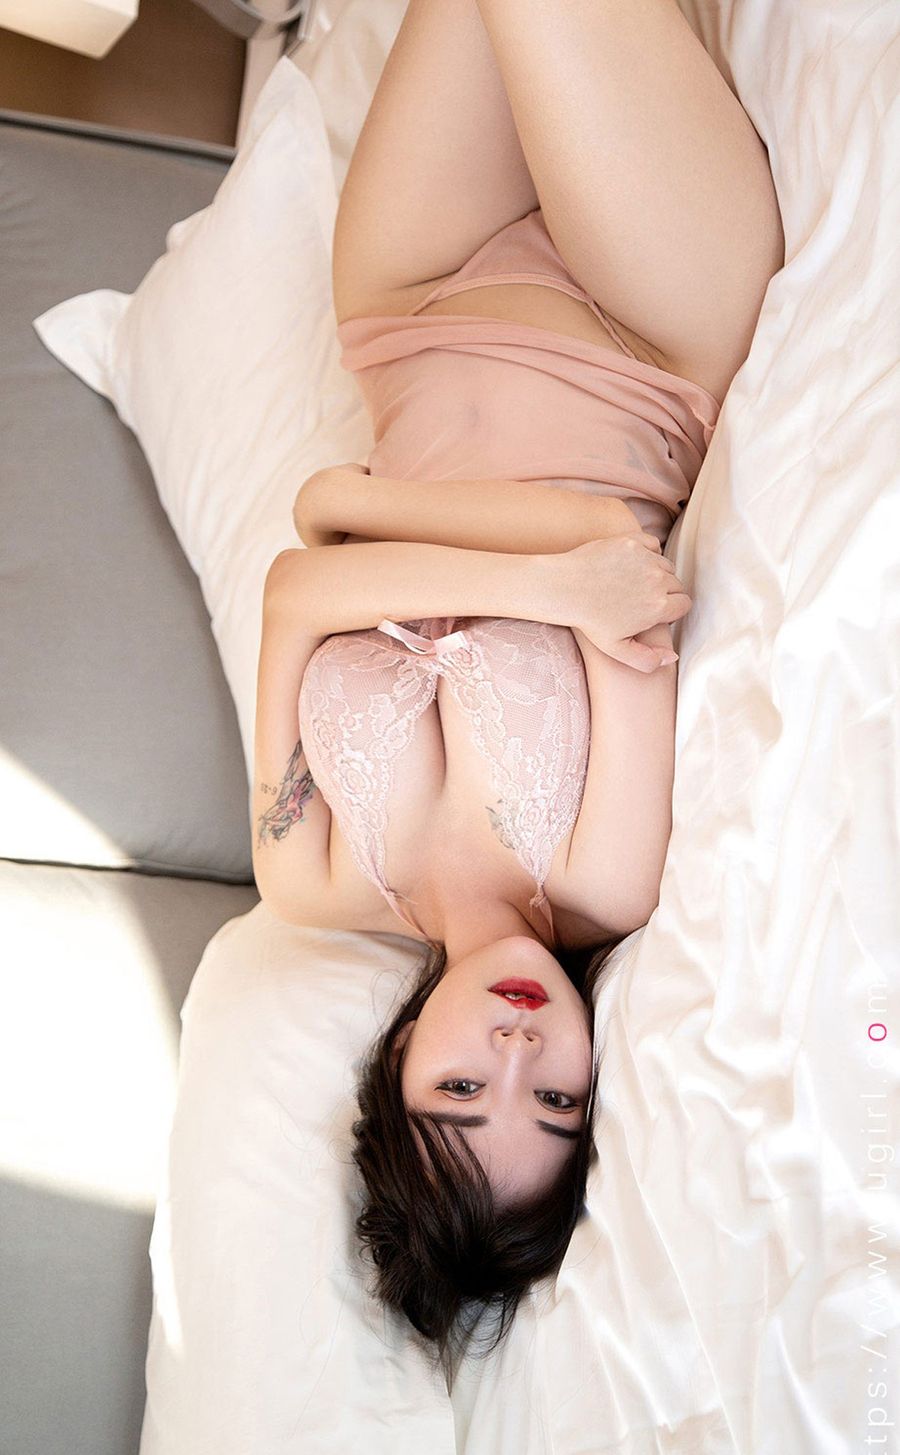 美女模特艾优蜜VV红唇惹火半透蕾丝睡衣系列性感写真